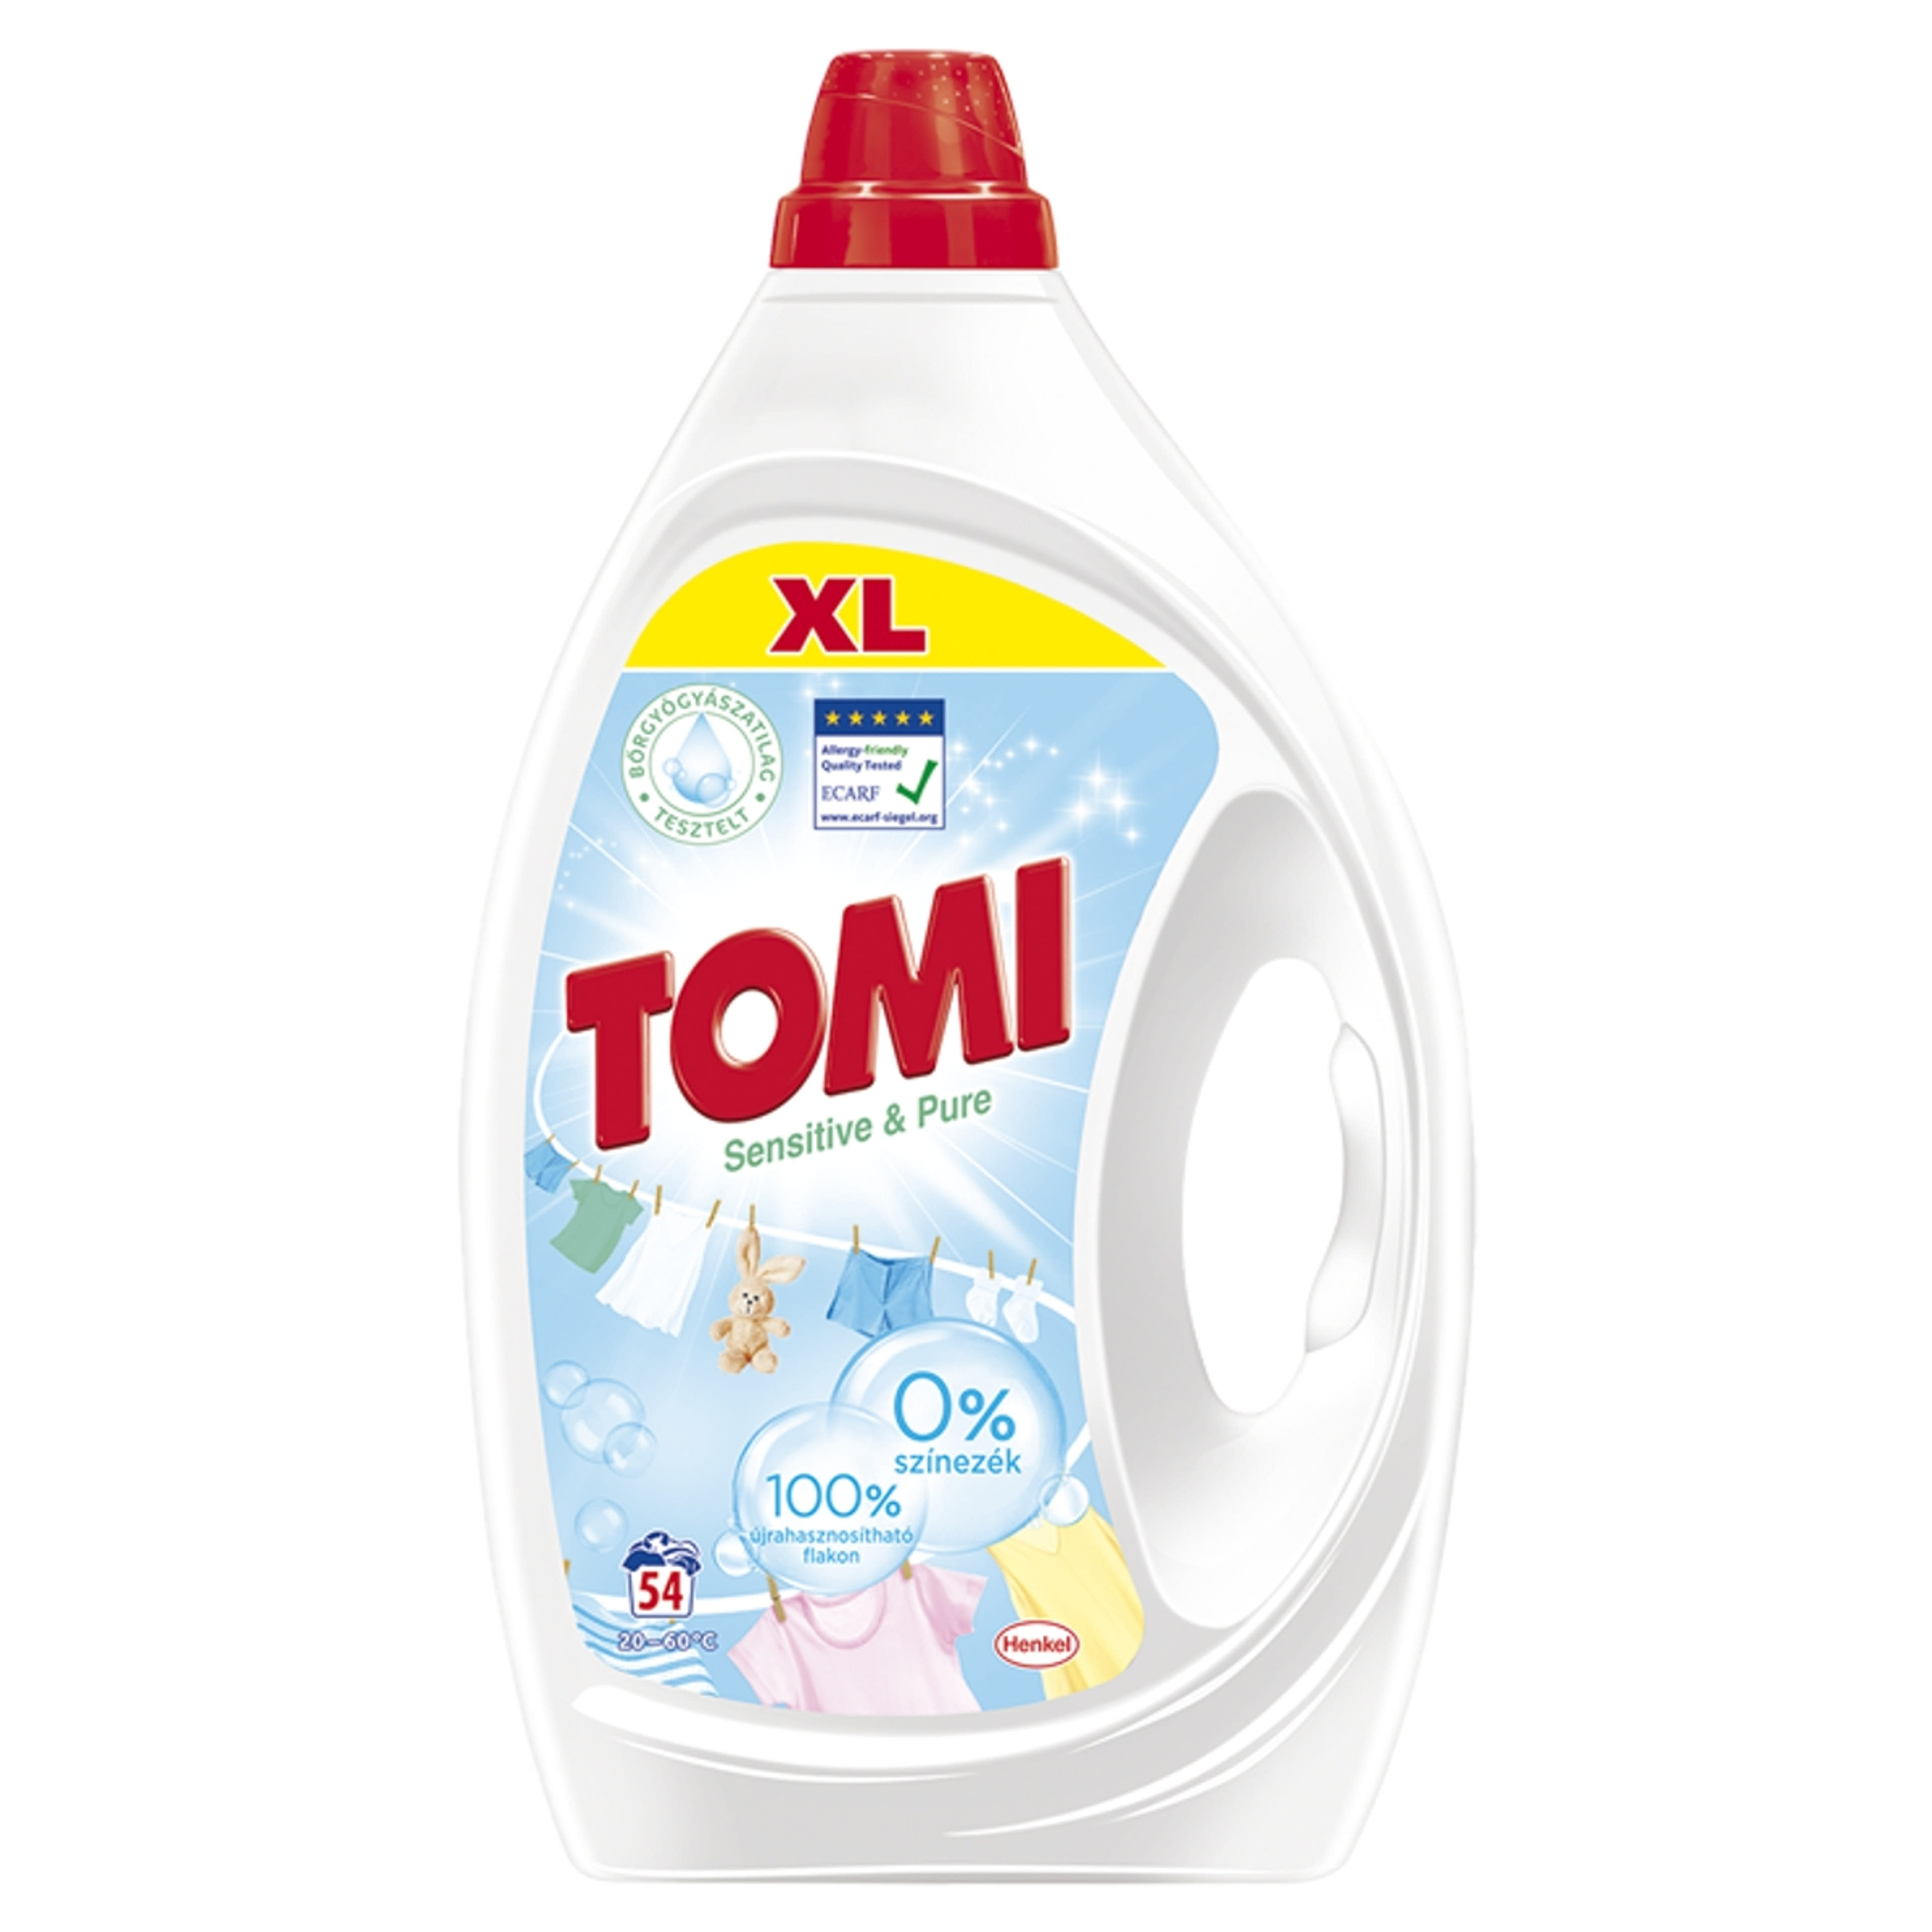 Tomi Sensitive & Pure folyékony mosószer 54 mosás - 2430 ml